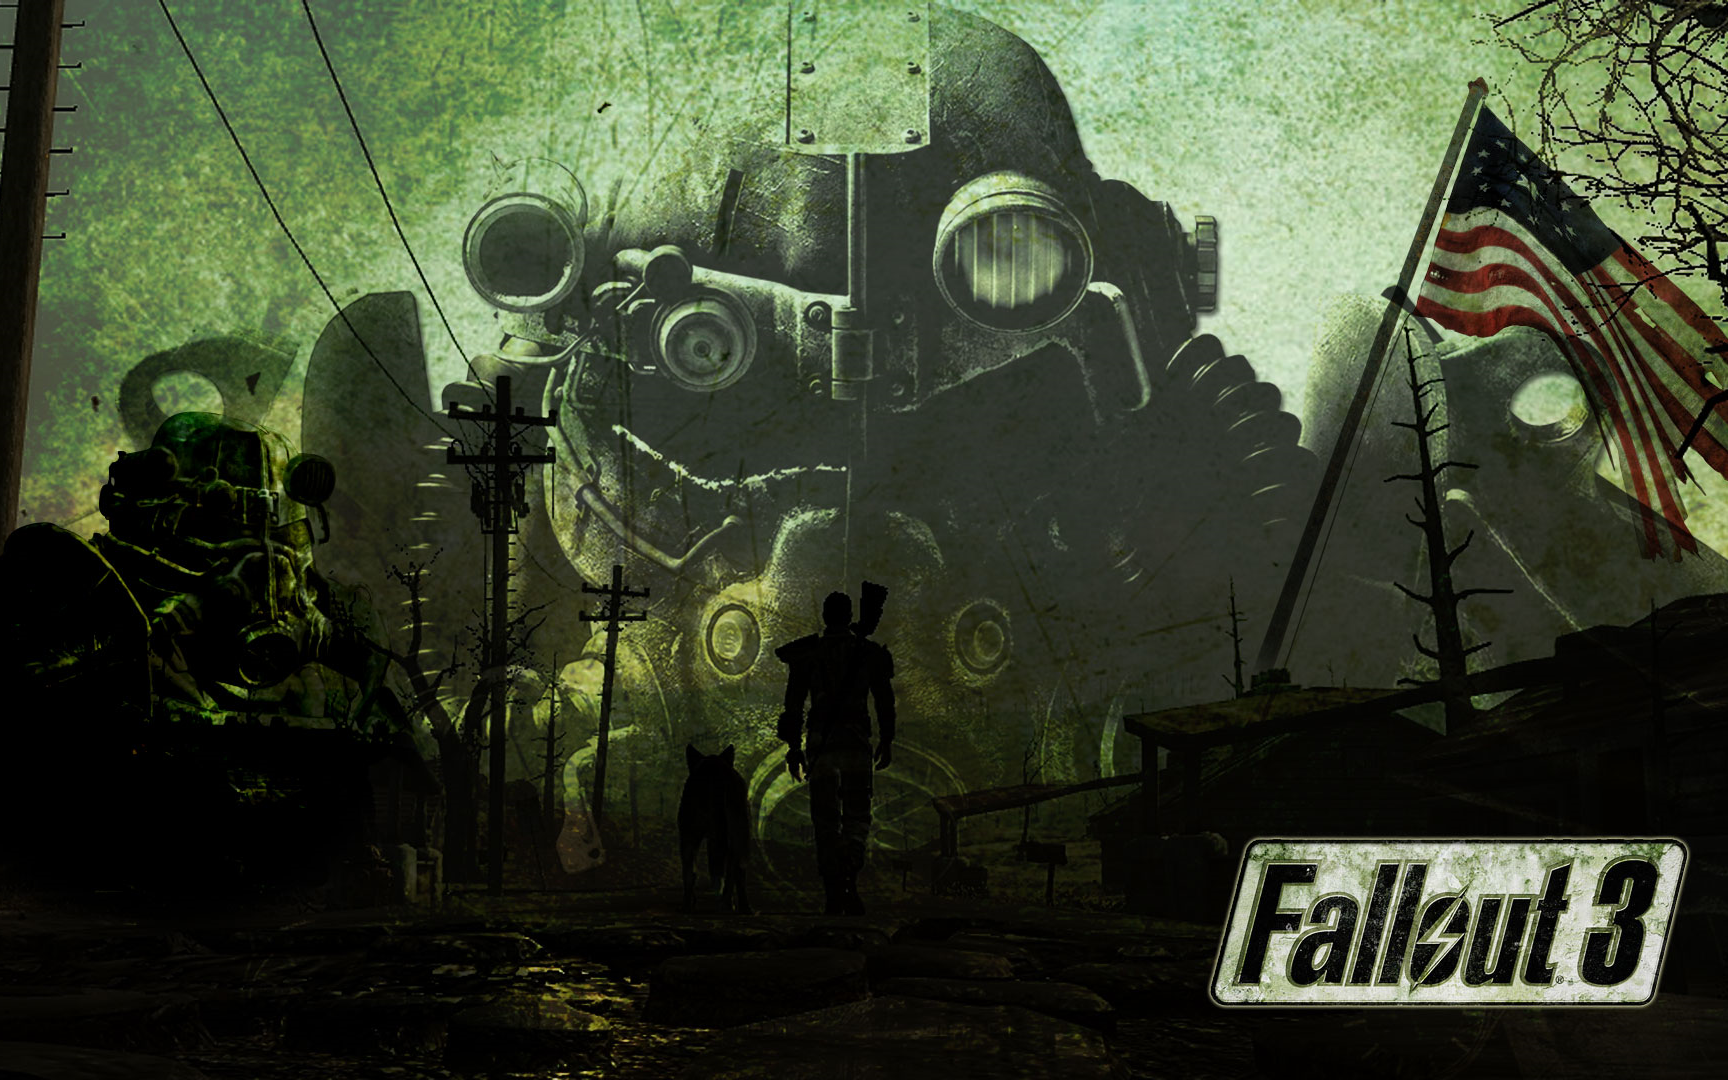 已完结 合集 超清 1080p 60fps 沙盒游戏 辐射3 Fallout 3 中文剧情流程全结局 哔哩哔哩 つロ干杯 Bilibili